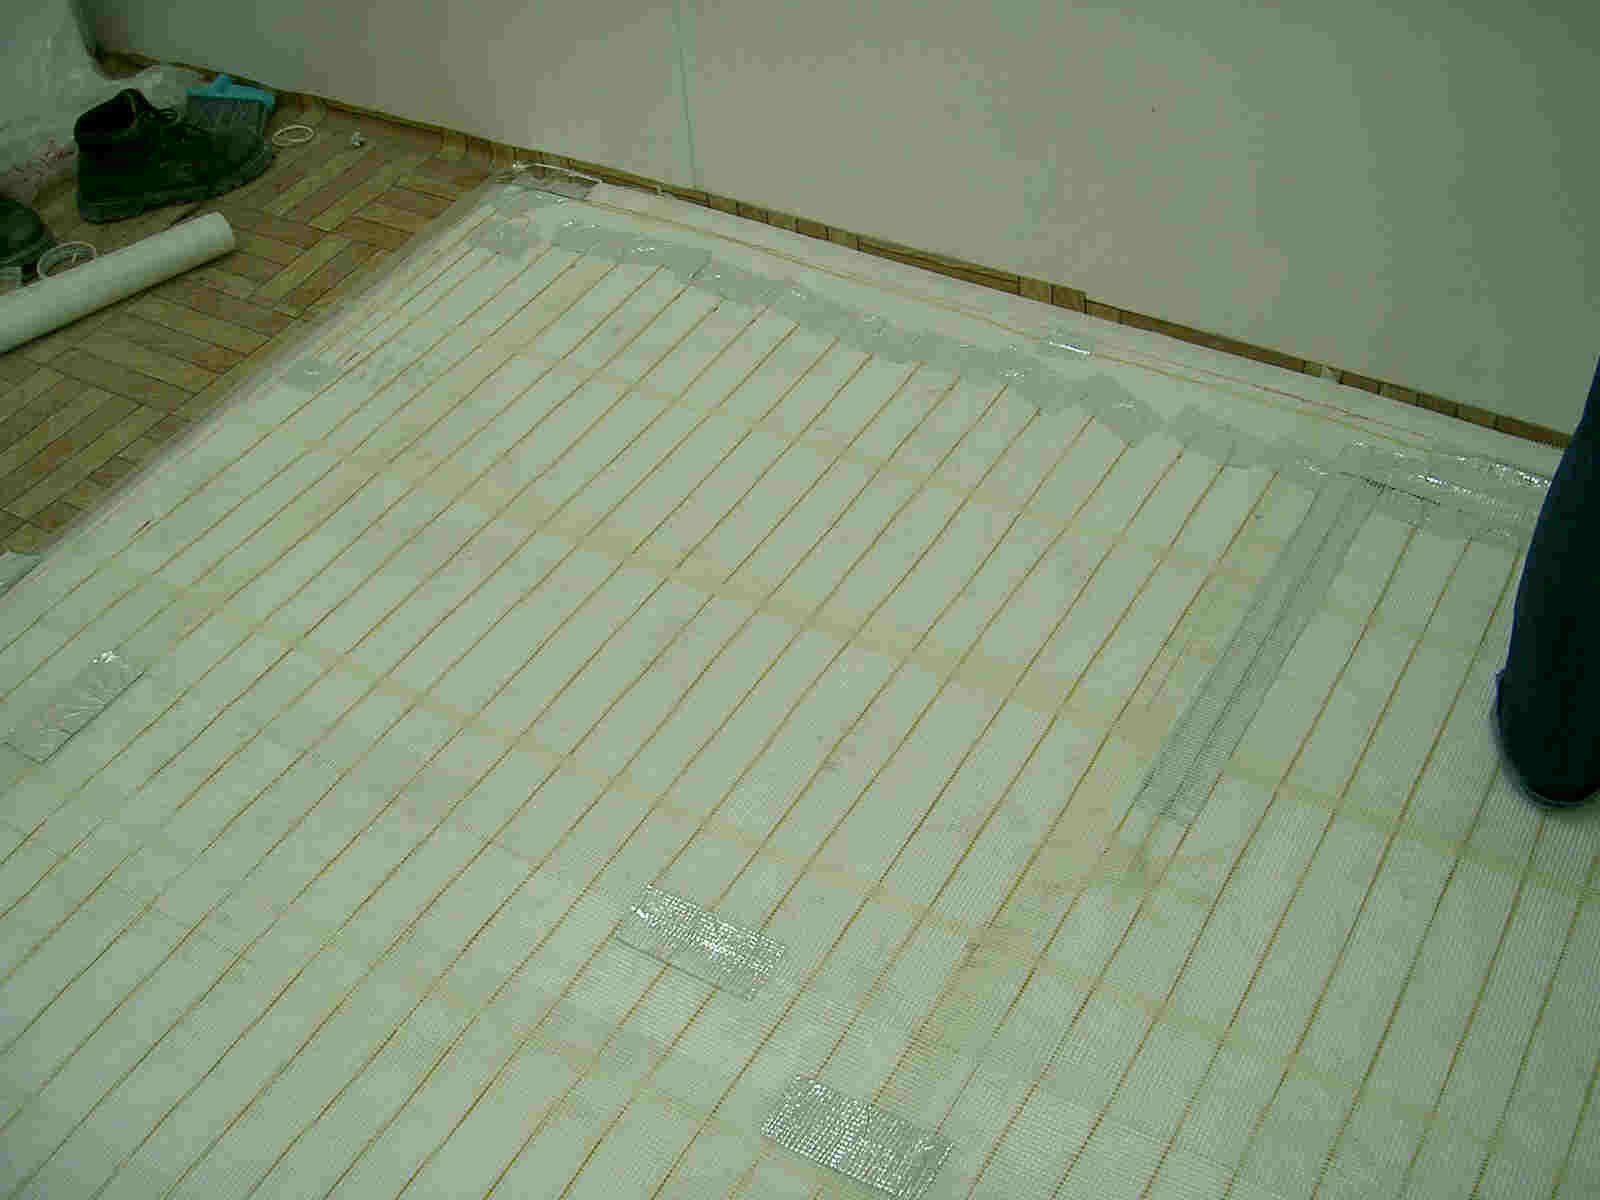 電暖板，發熱地板，地暖系統，floor heating, floor warming, heating pad, heating mat